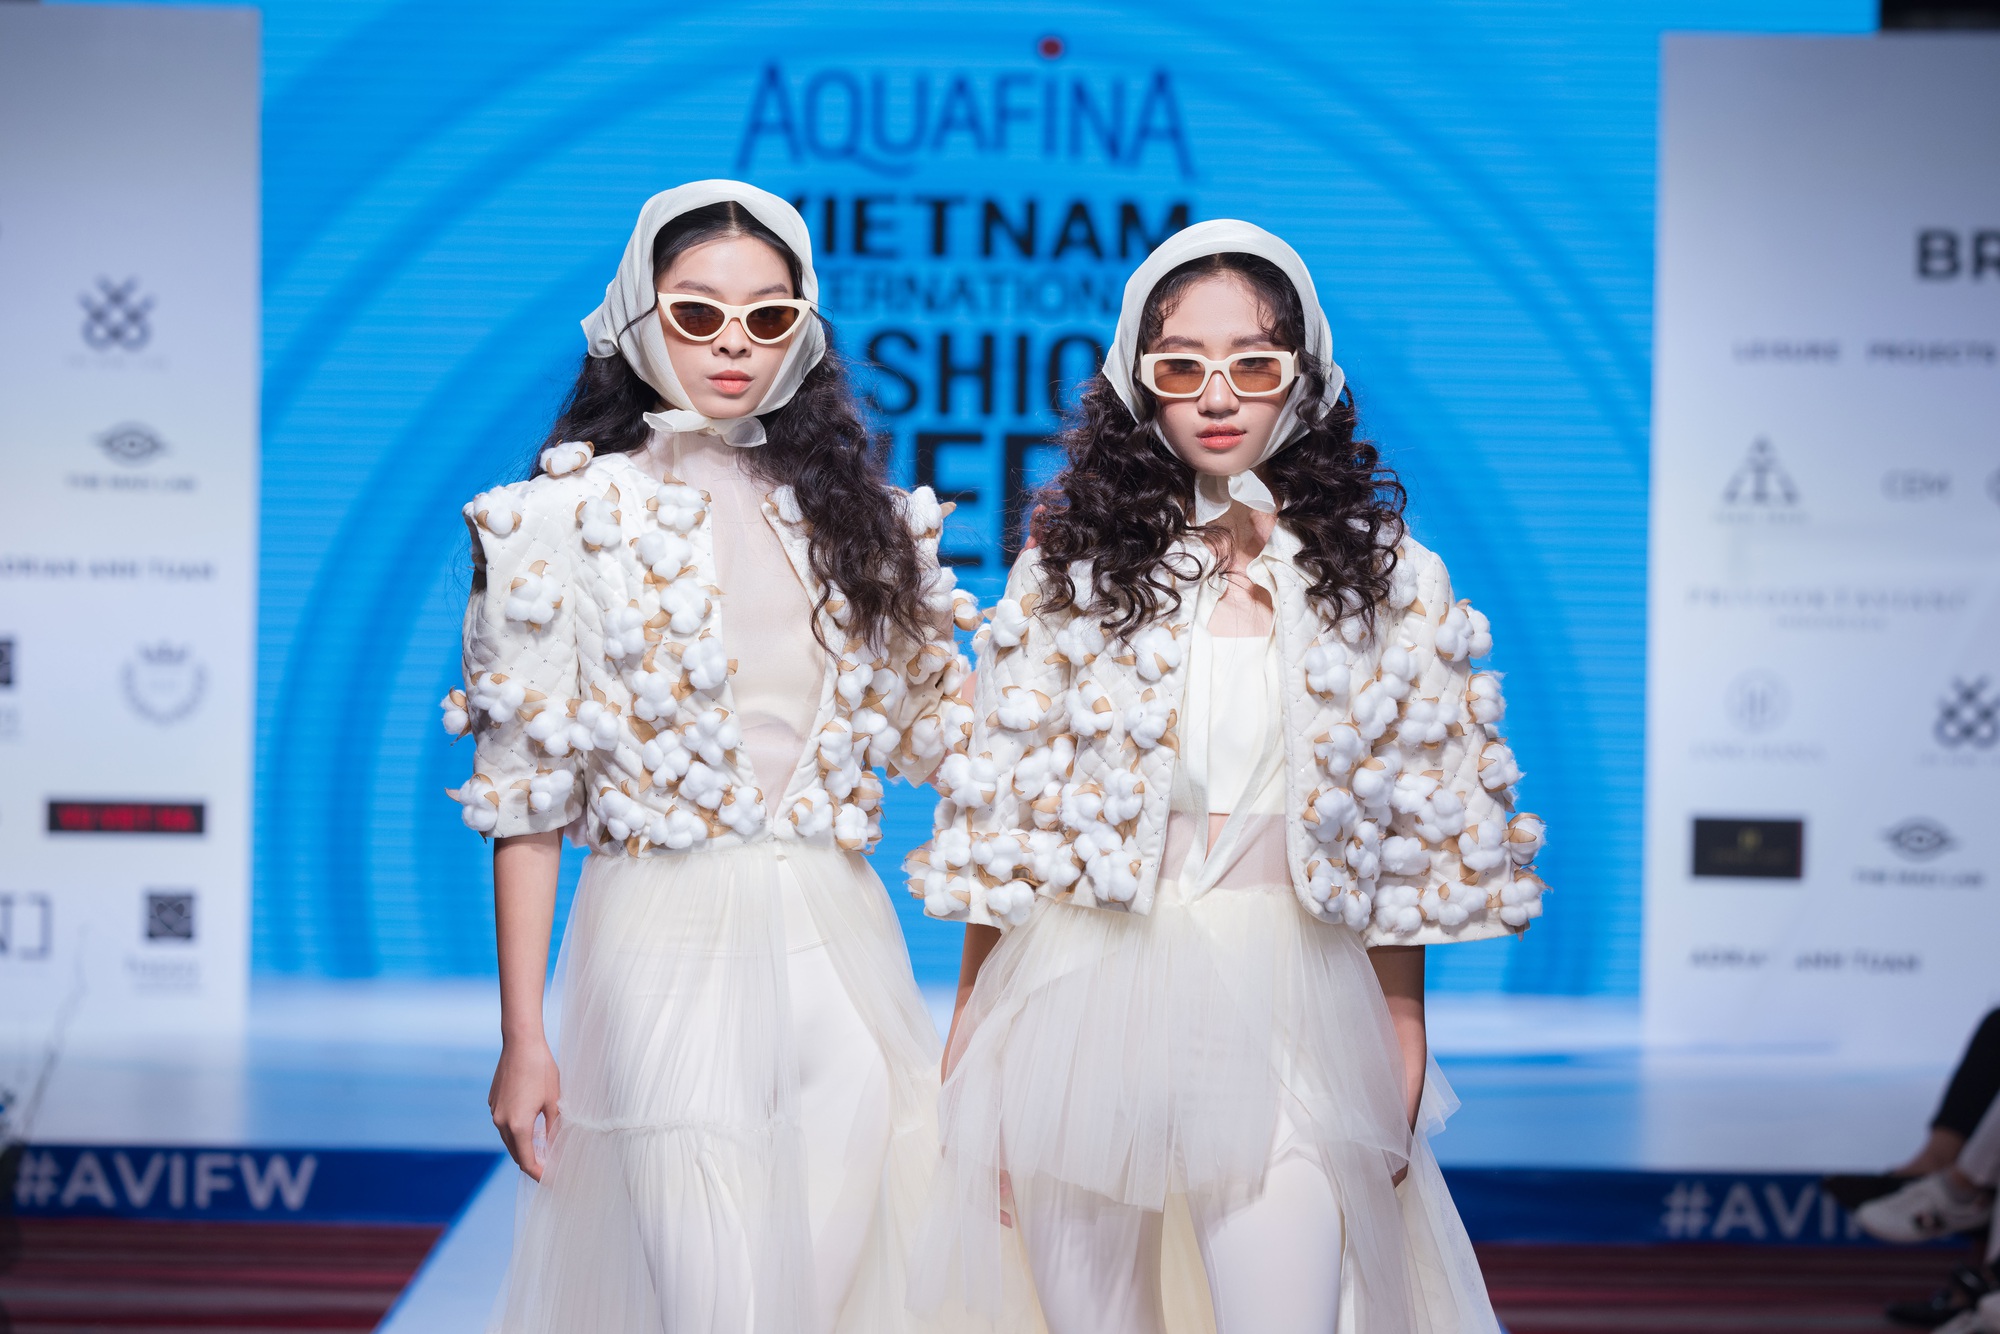 16 nhà thiết kế, thương hiệu sẽ tham dự Aquafina Tuần lễ thời trang Quốc tế Việt Nam - Ảnh 4.